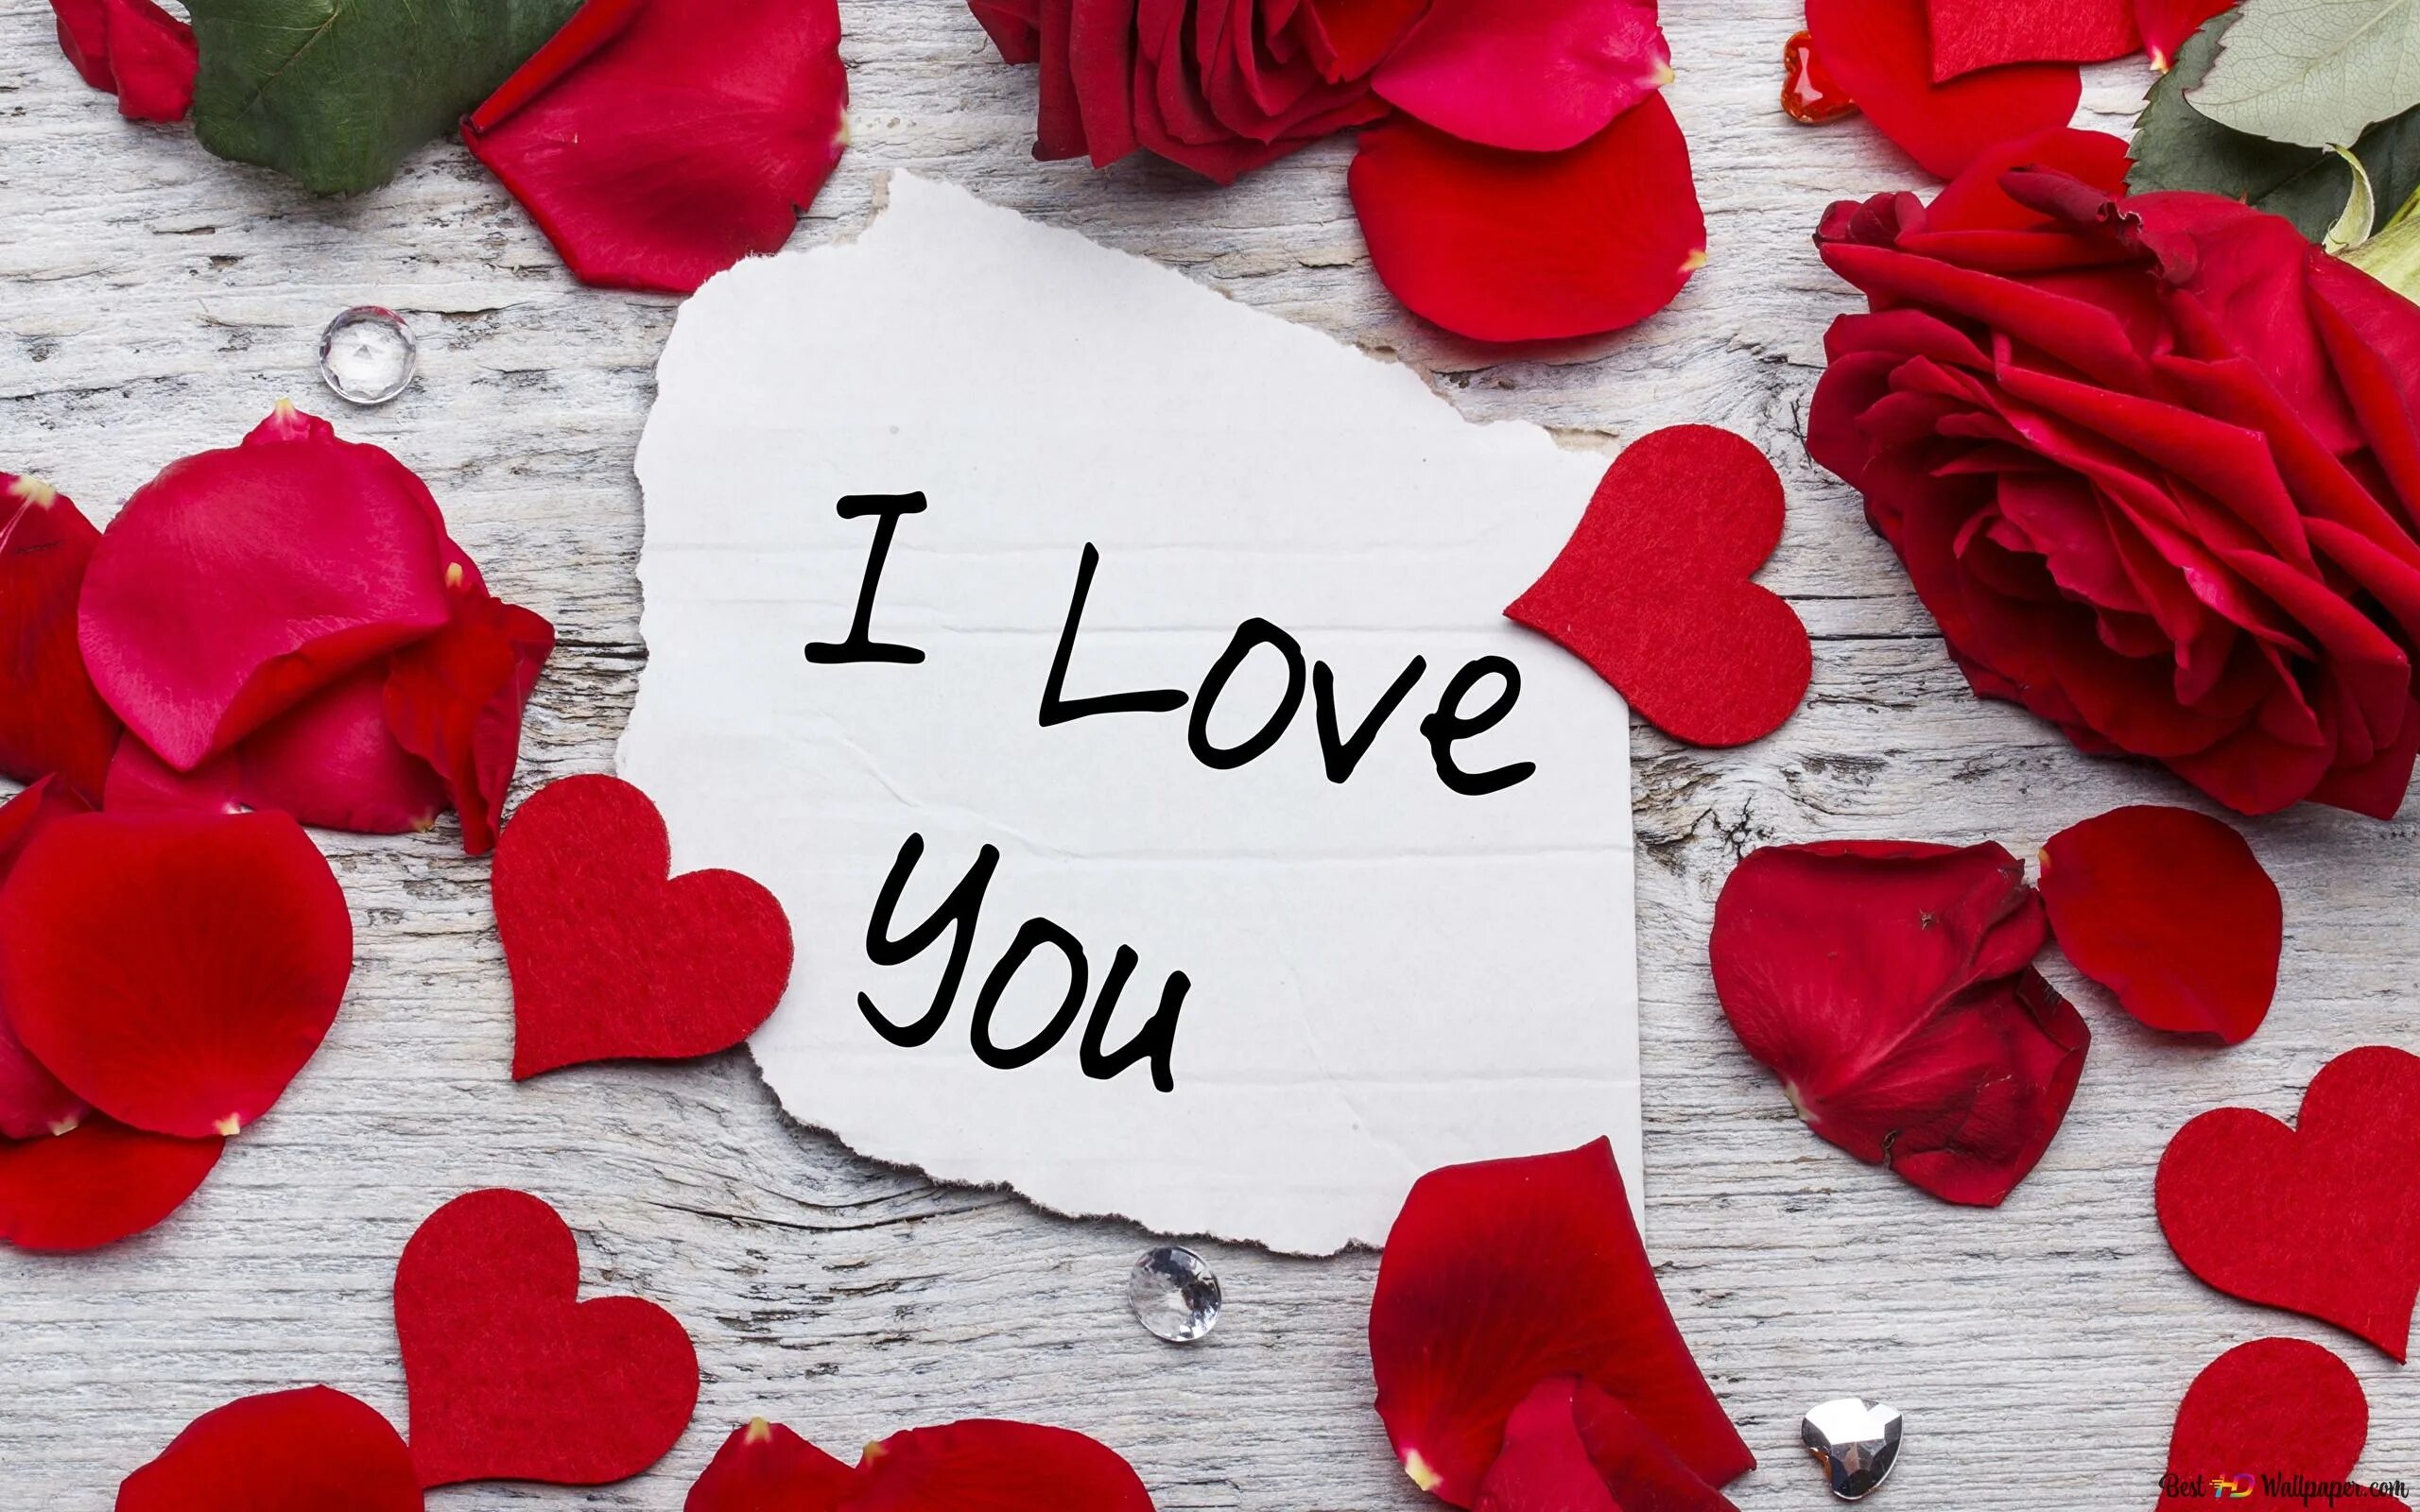 День влюбленных в казахстане 15 апреля. Красивые картинки про любовь. Сердечко для любимого. Романтическая валентинка.